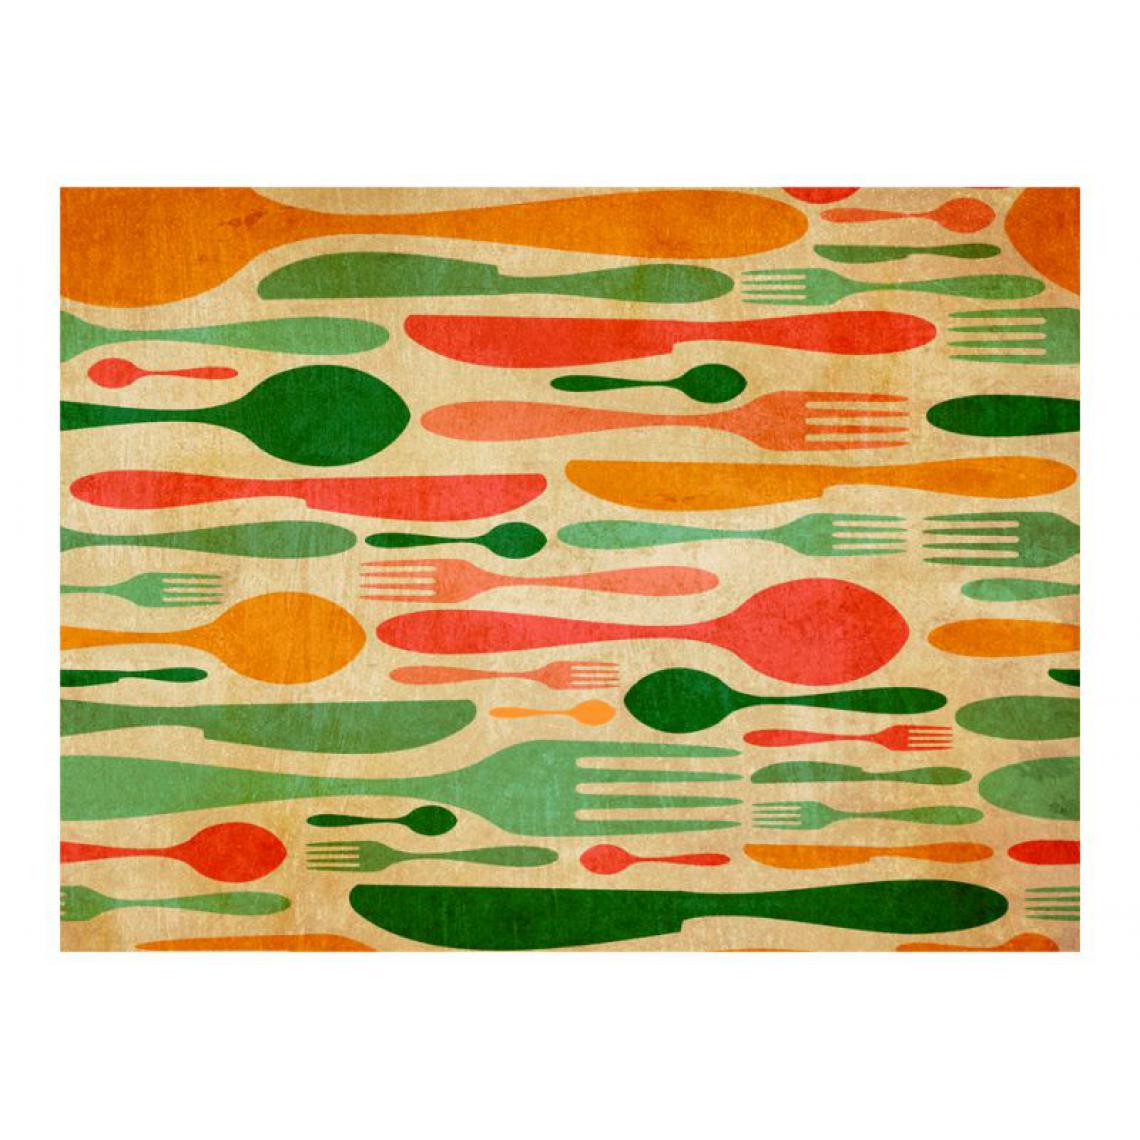 Artgeist - Papier peint - Couverts en vert et orange .Taille : 300x231 - Papier peint